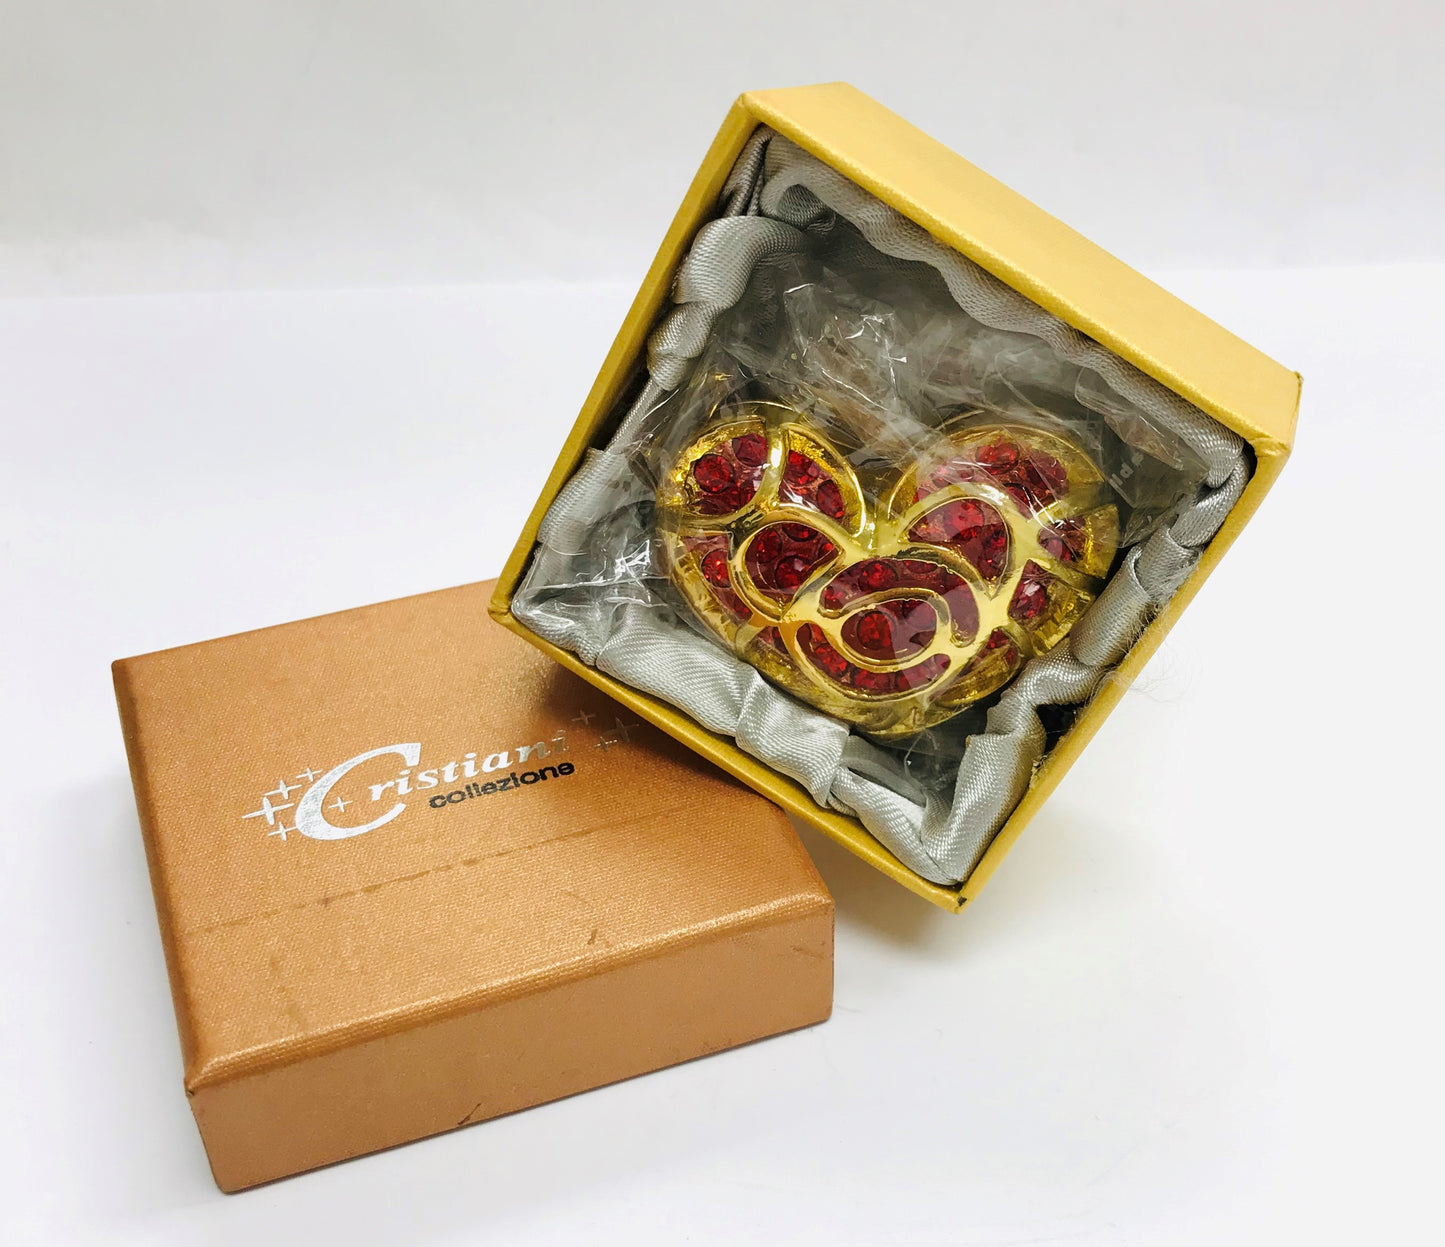 Cristiani Collezione Heart Trinket Box.